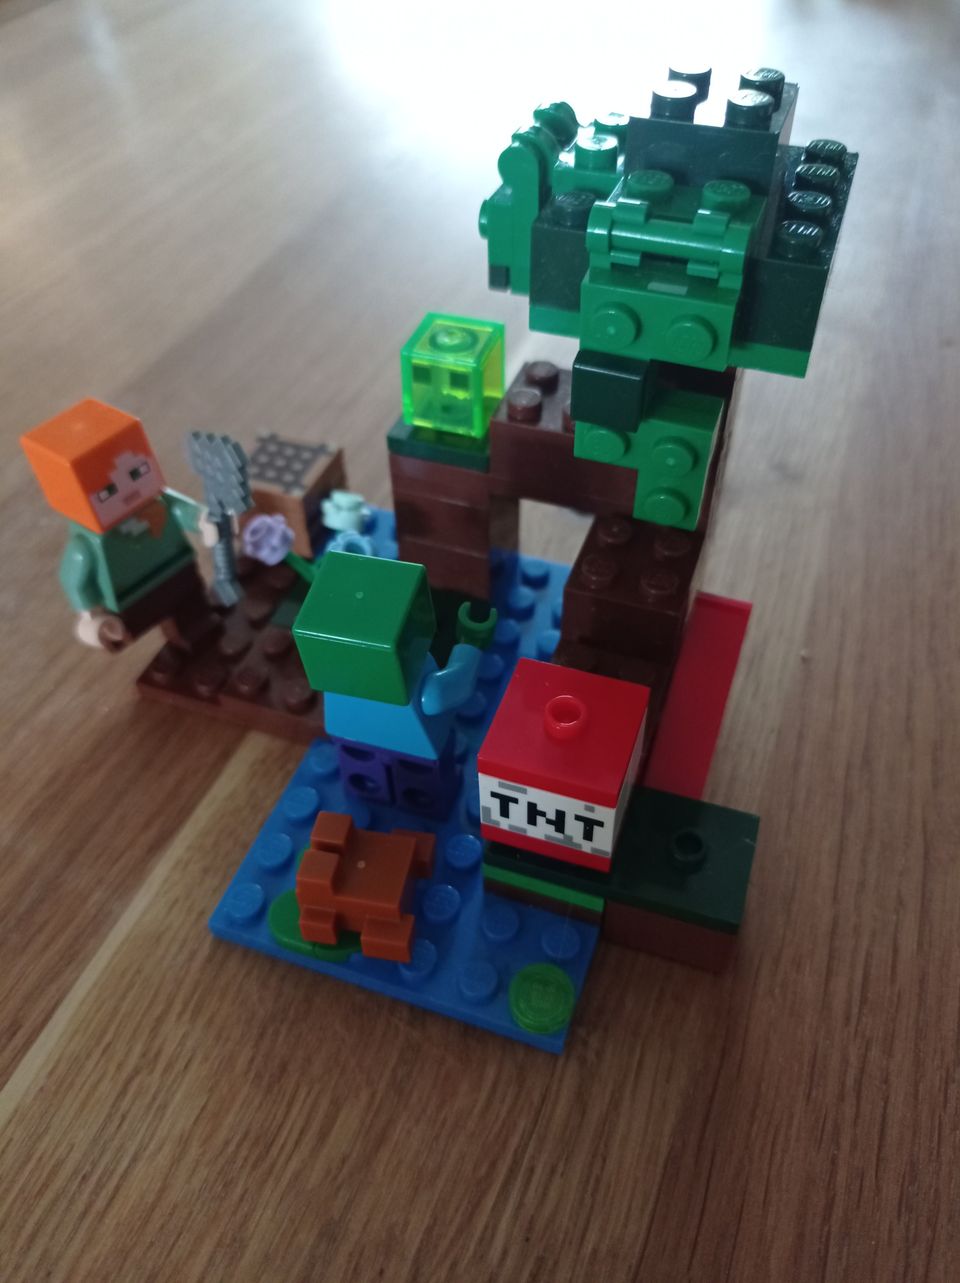 Lego Minecraft 21240 Suoseikkailu